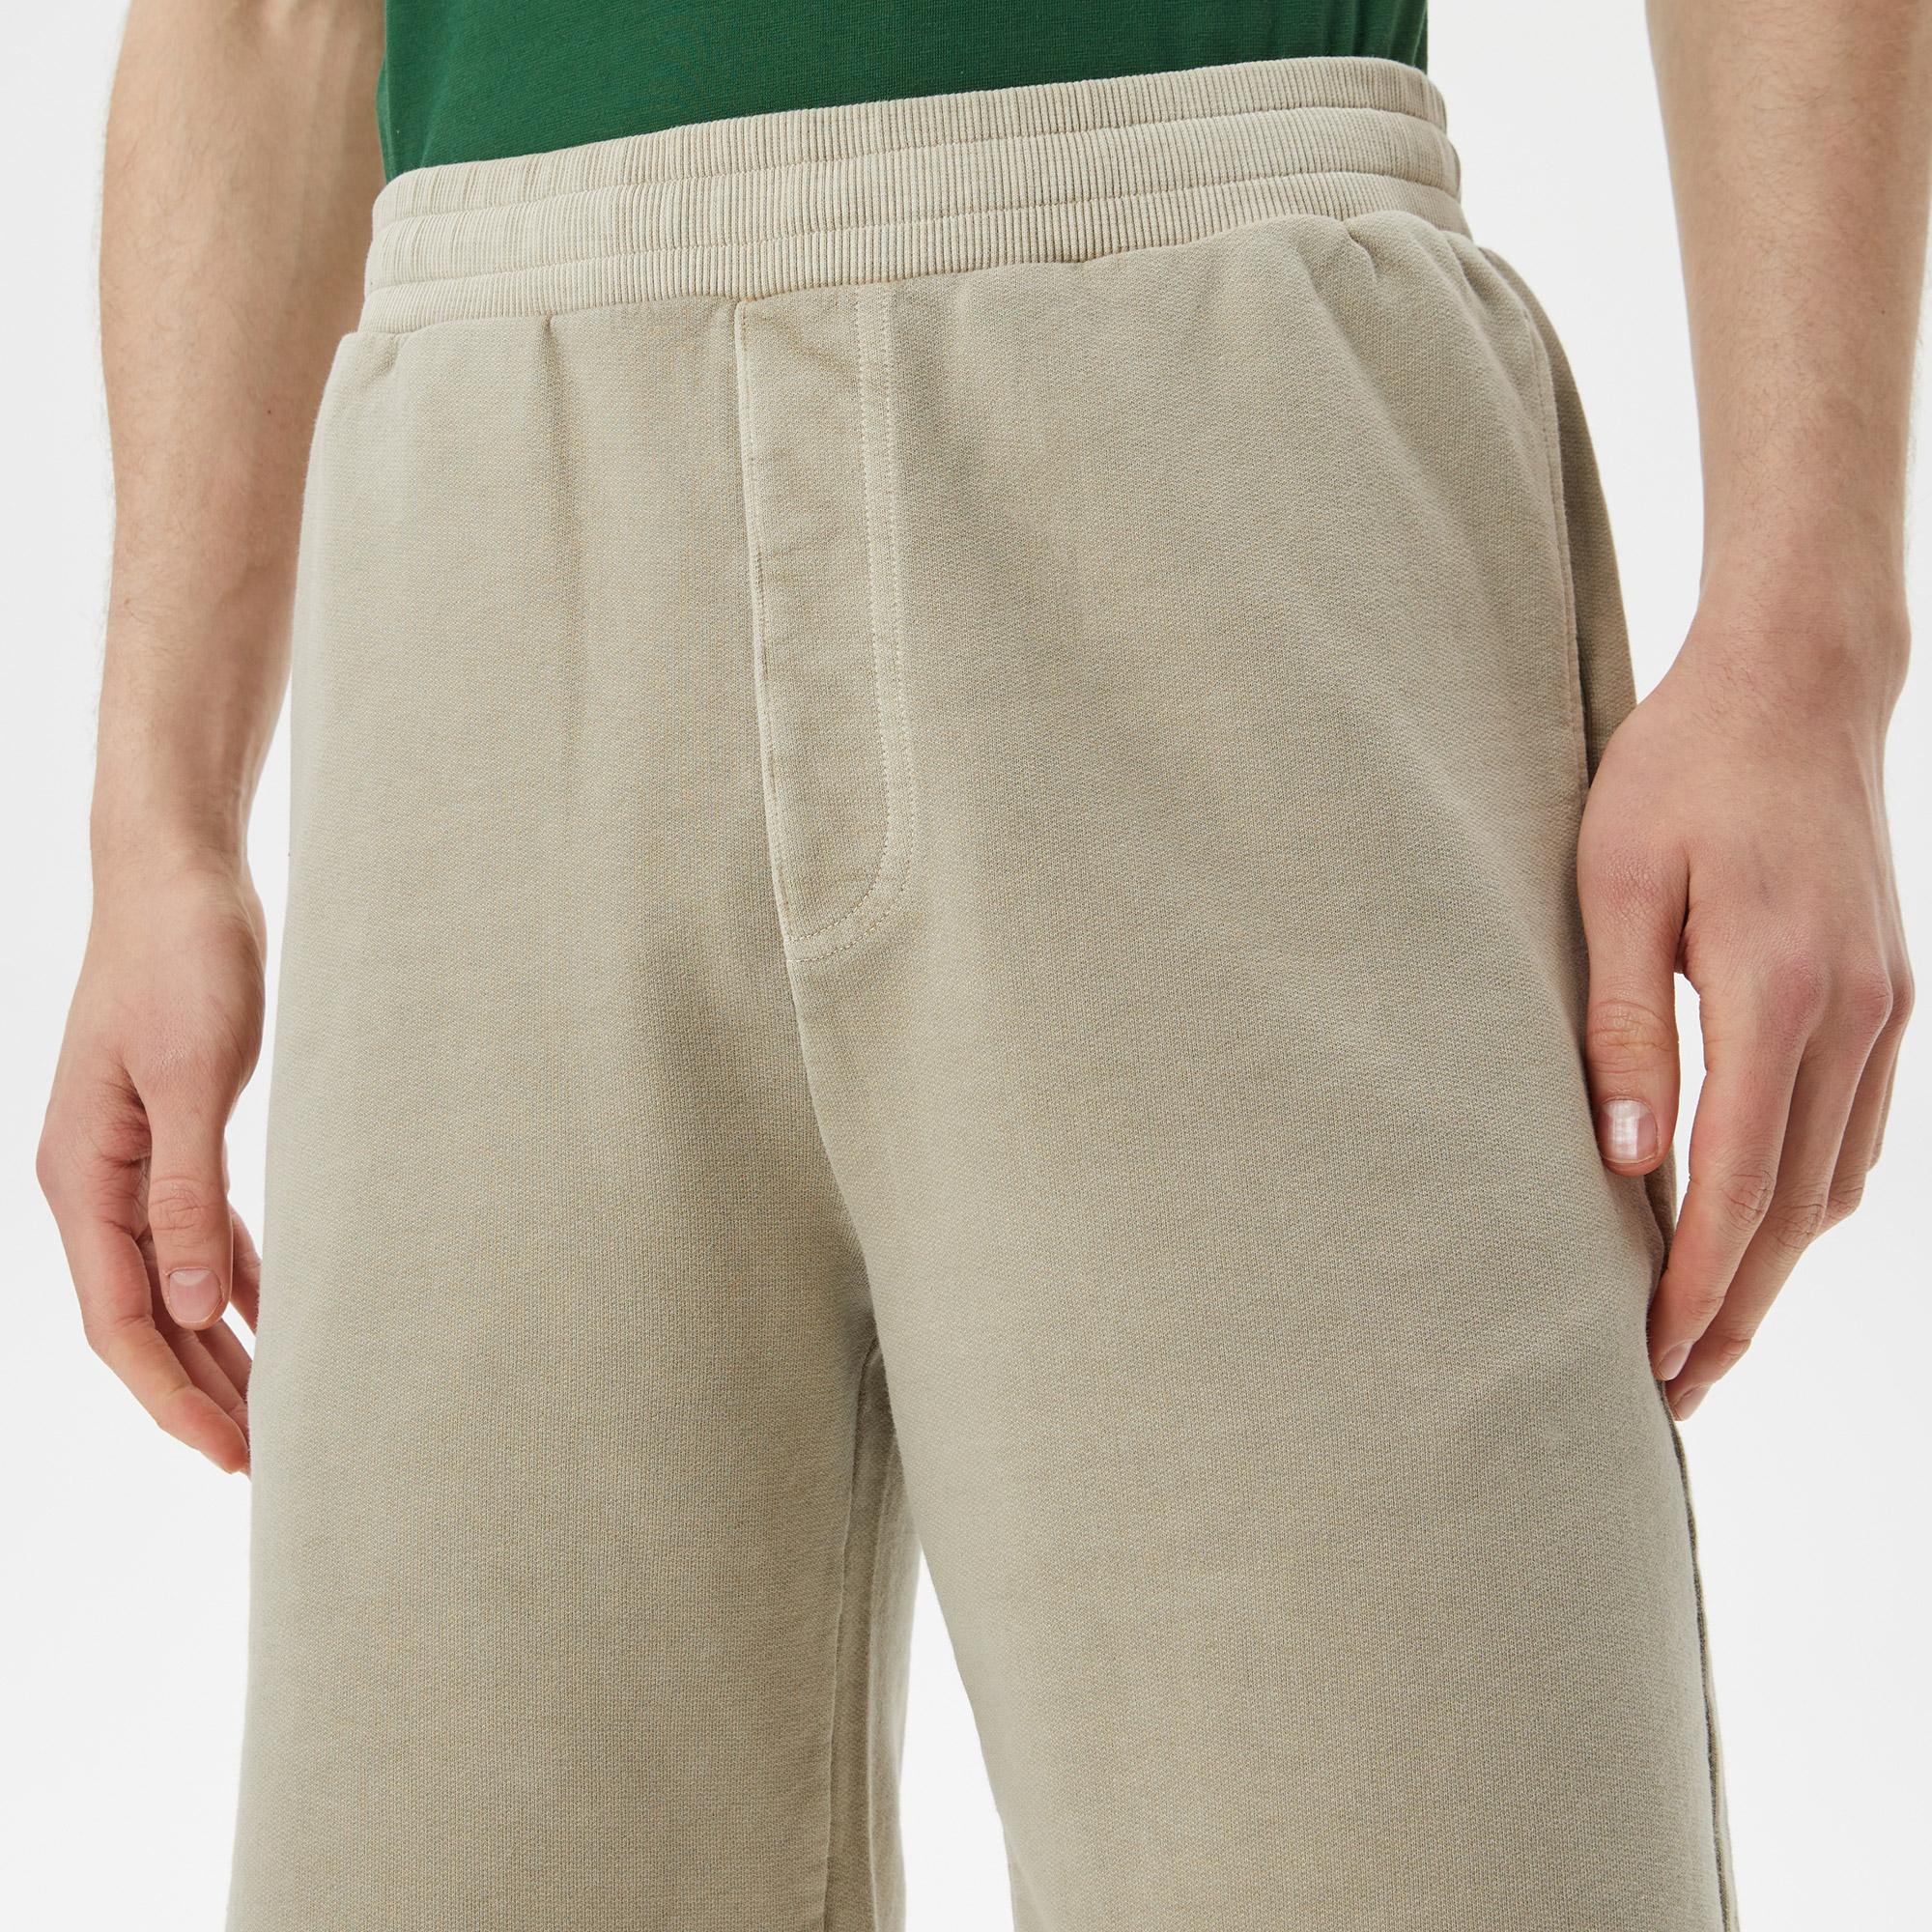 Lacoste Men's Shorts